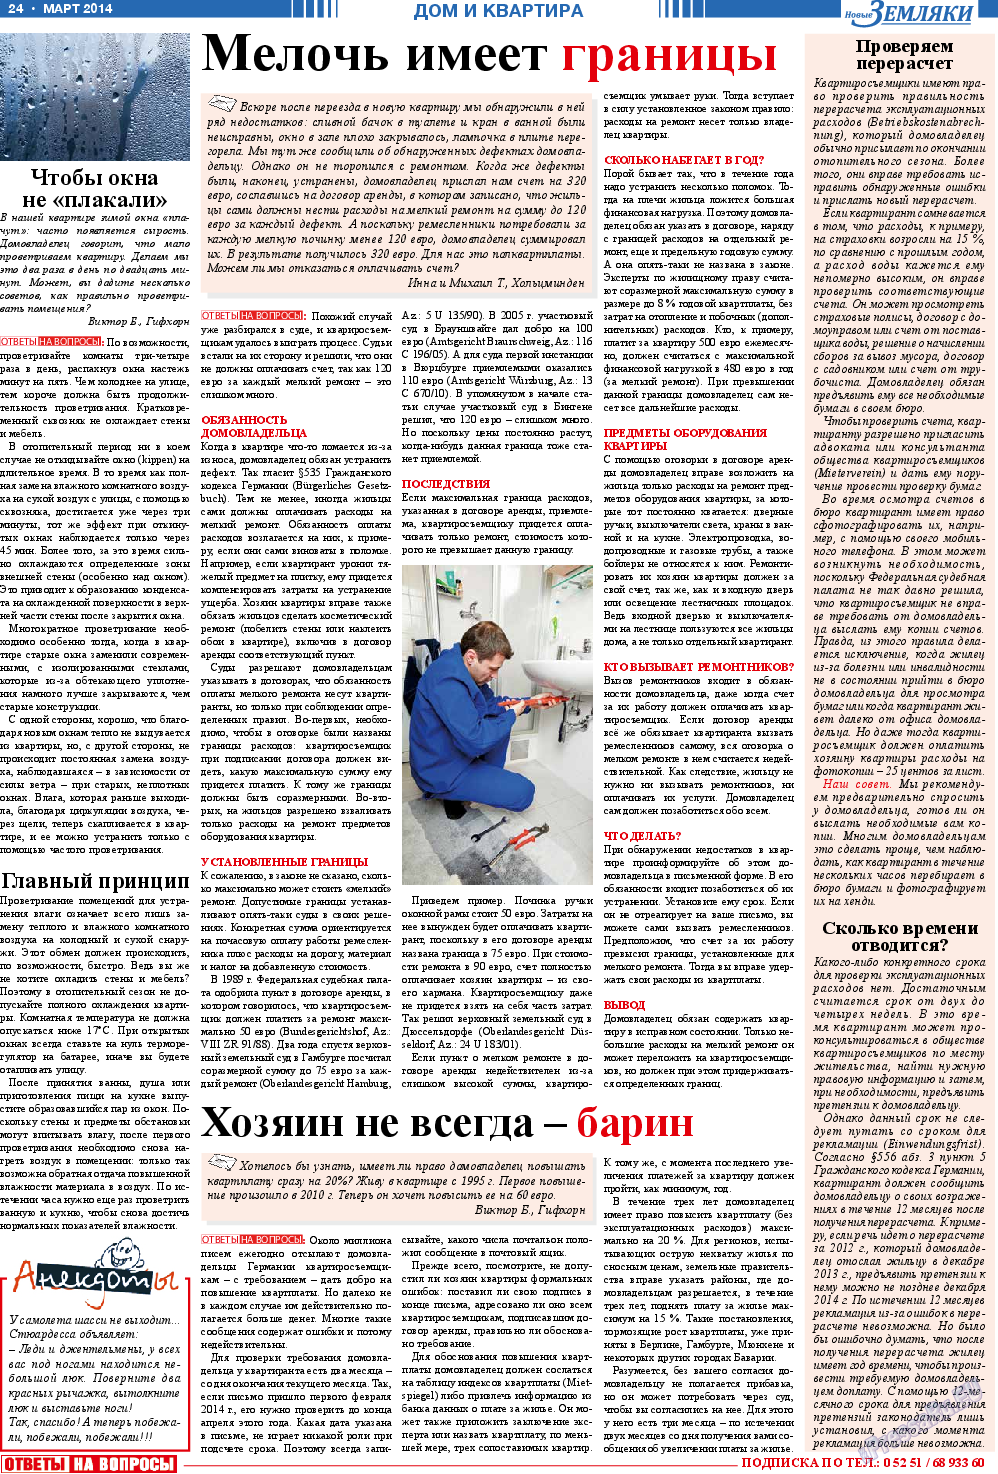 Новые Земляки (газета). 2014 год, номер 3, стр. 24